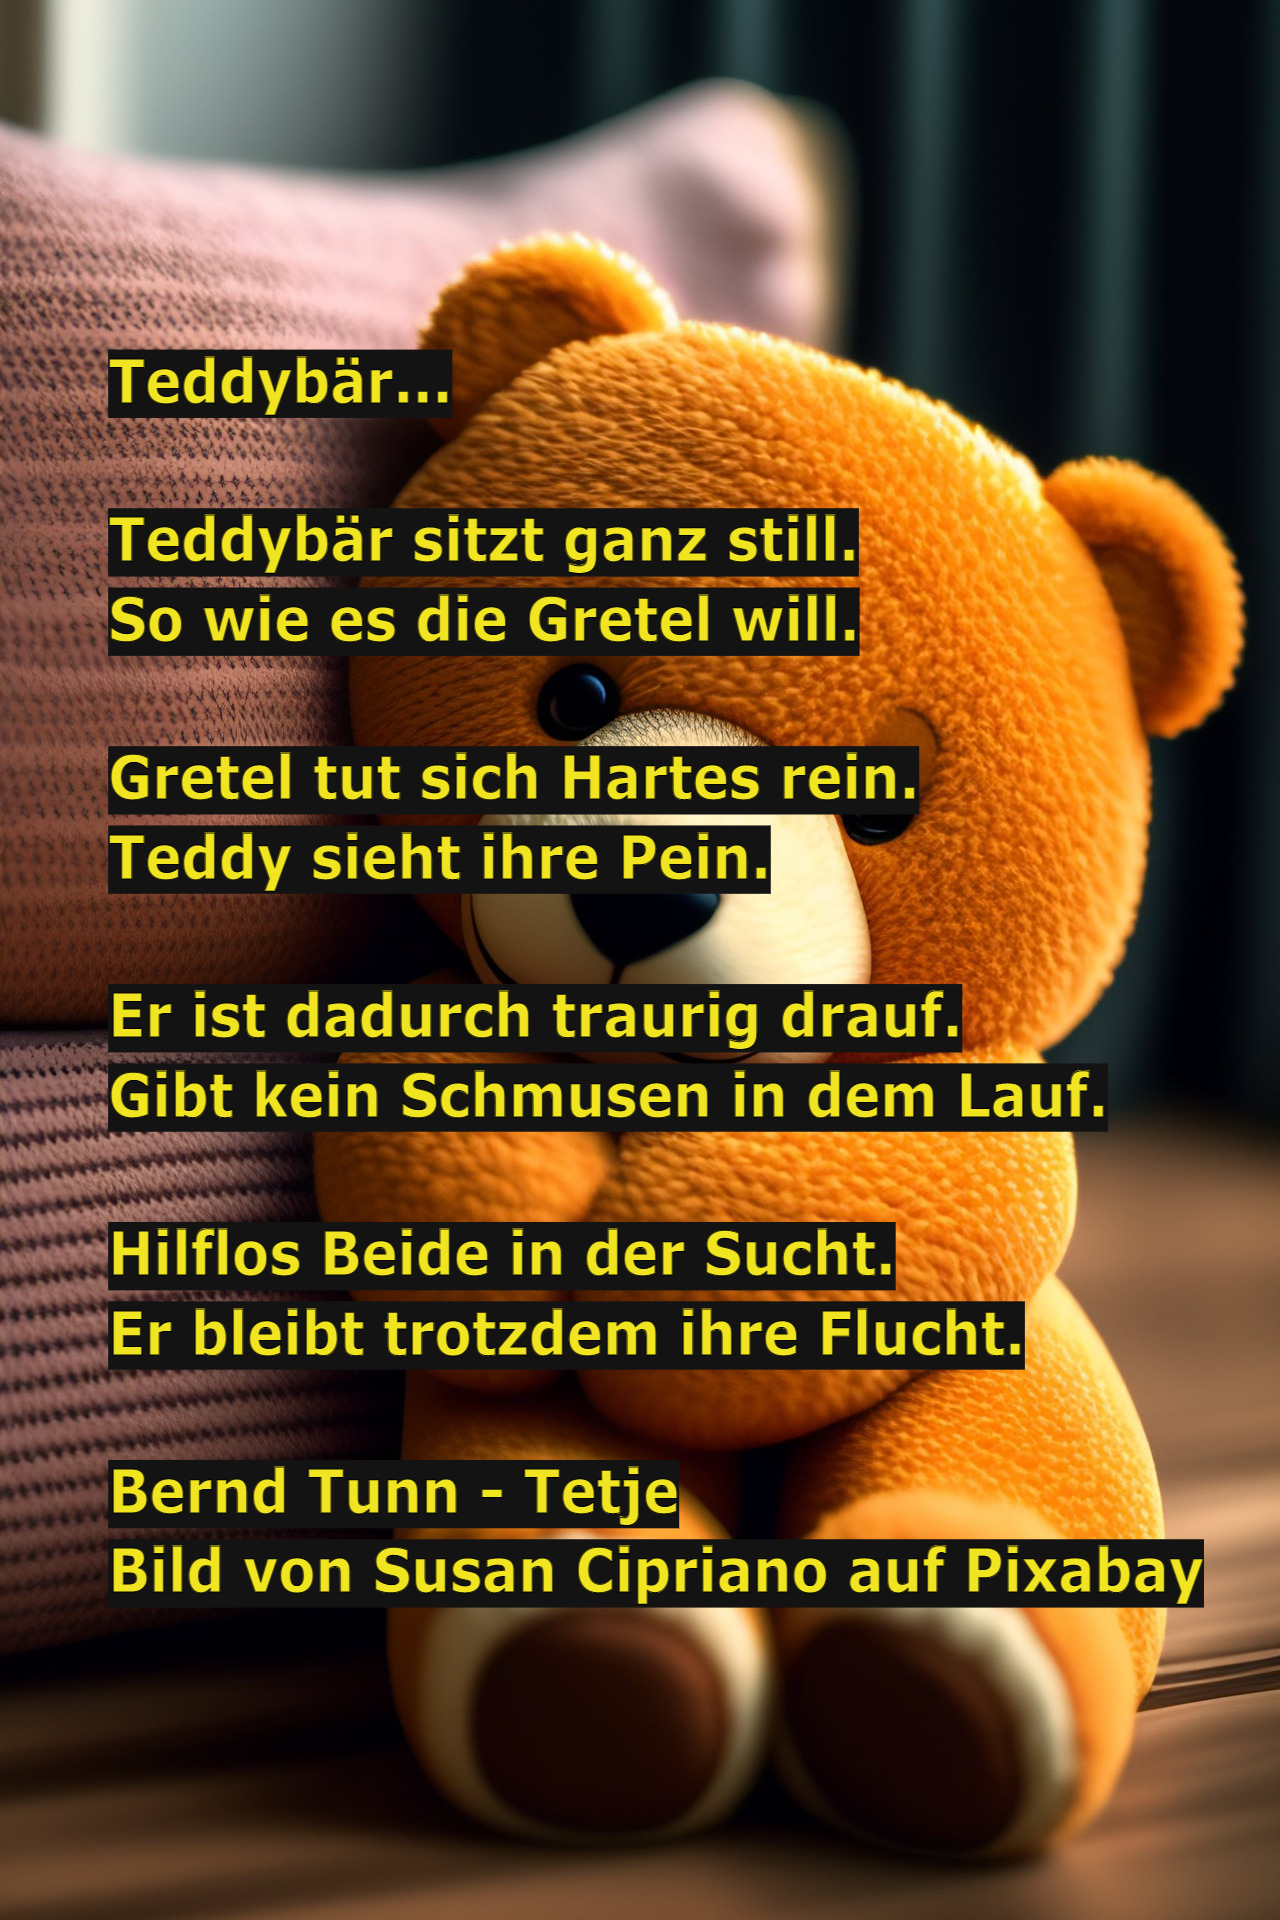 Teddybär...